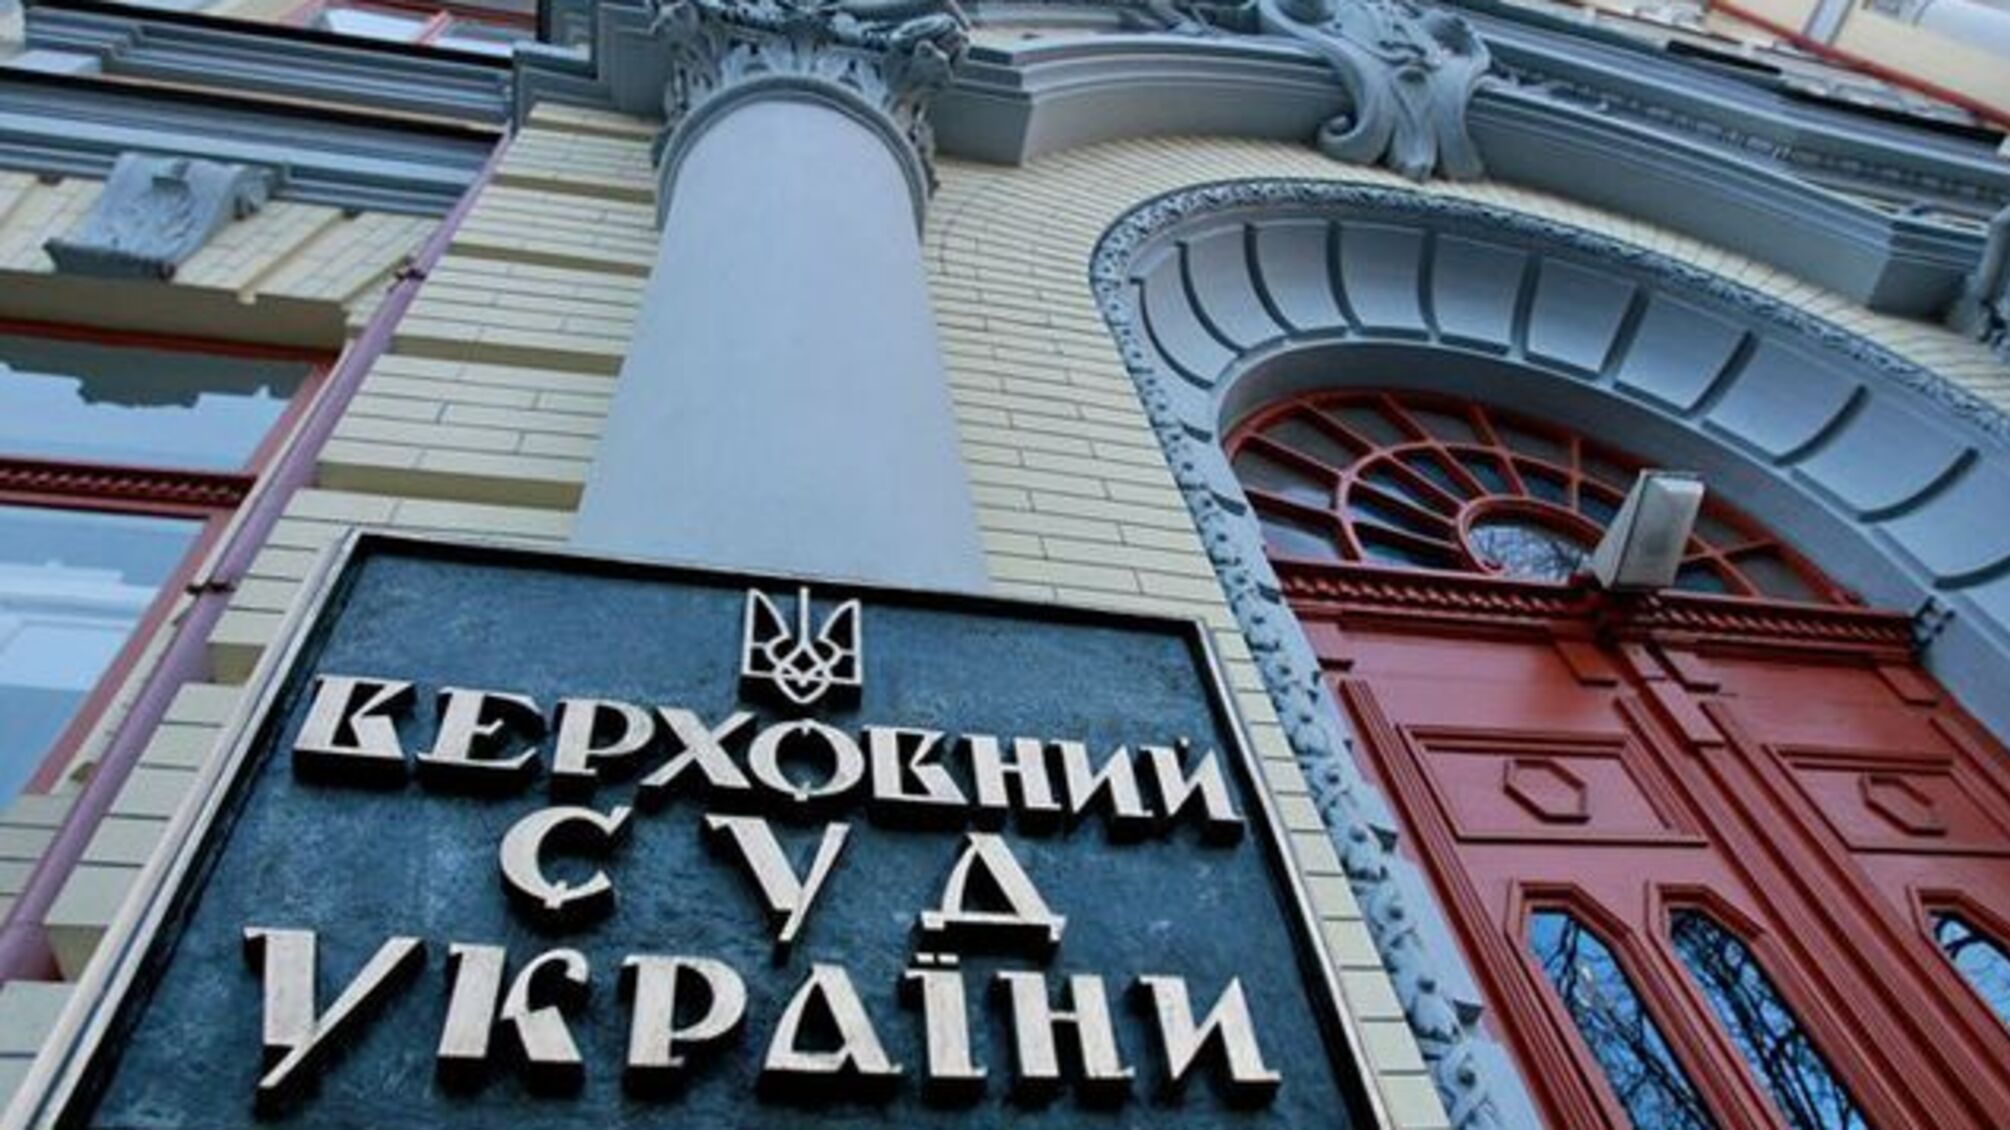 'СтопКор' дізнався про приховані мотиви й темні плями в досьє суддів-кандидатів до Вищого Суду України